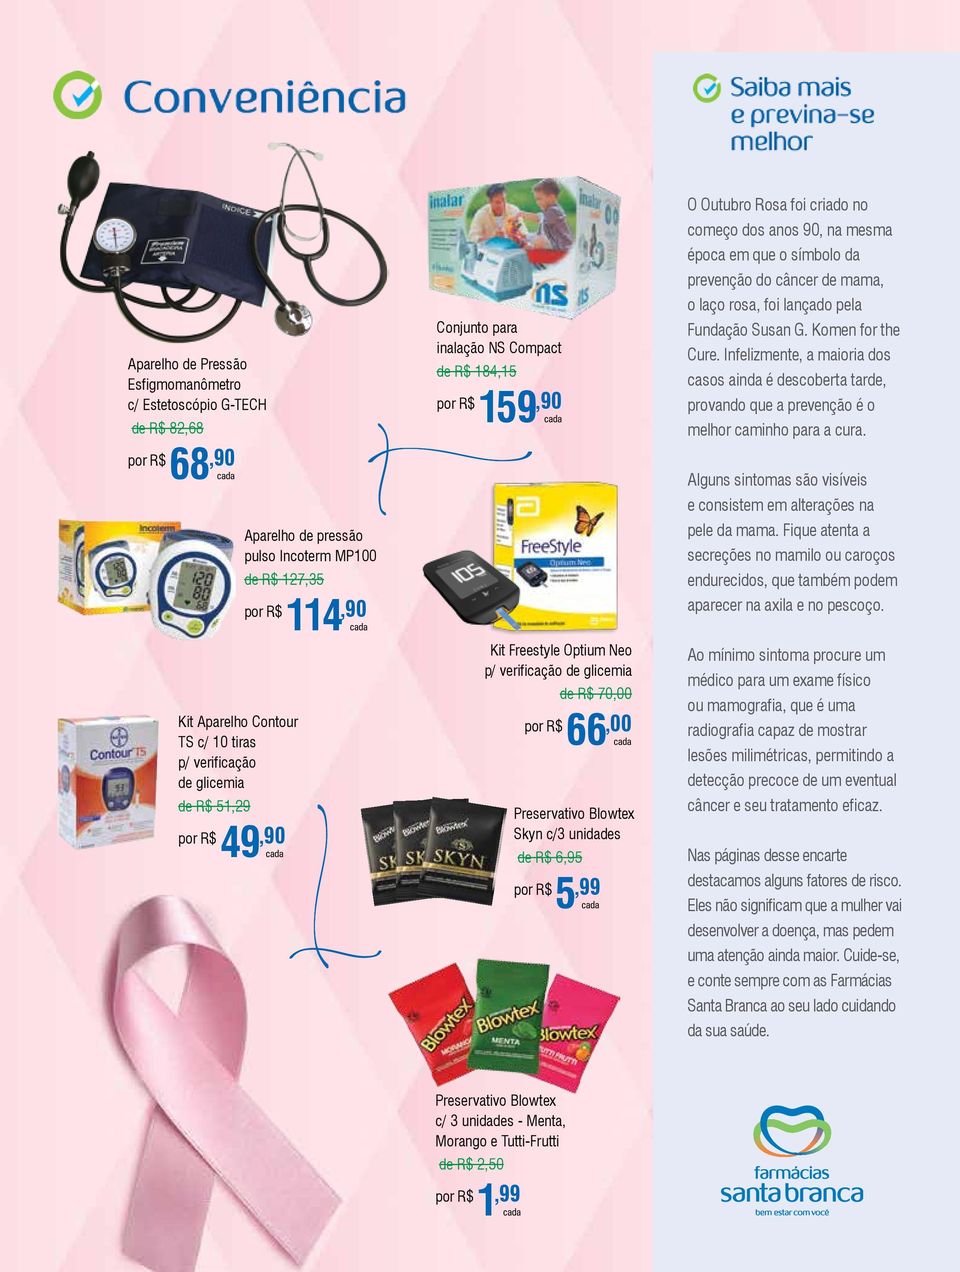 O Outubro Rosa foi criado no começo dos anos 90, na mesma época em que o símbolo da prevenção do câncer de mama, o laço rosa, foi lançado pela Fundação Susan G. Komen for the Cure.